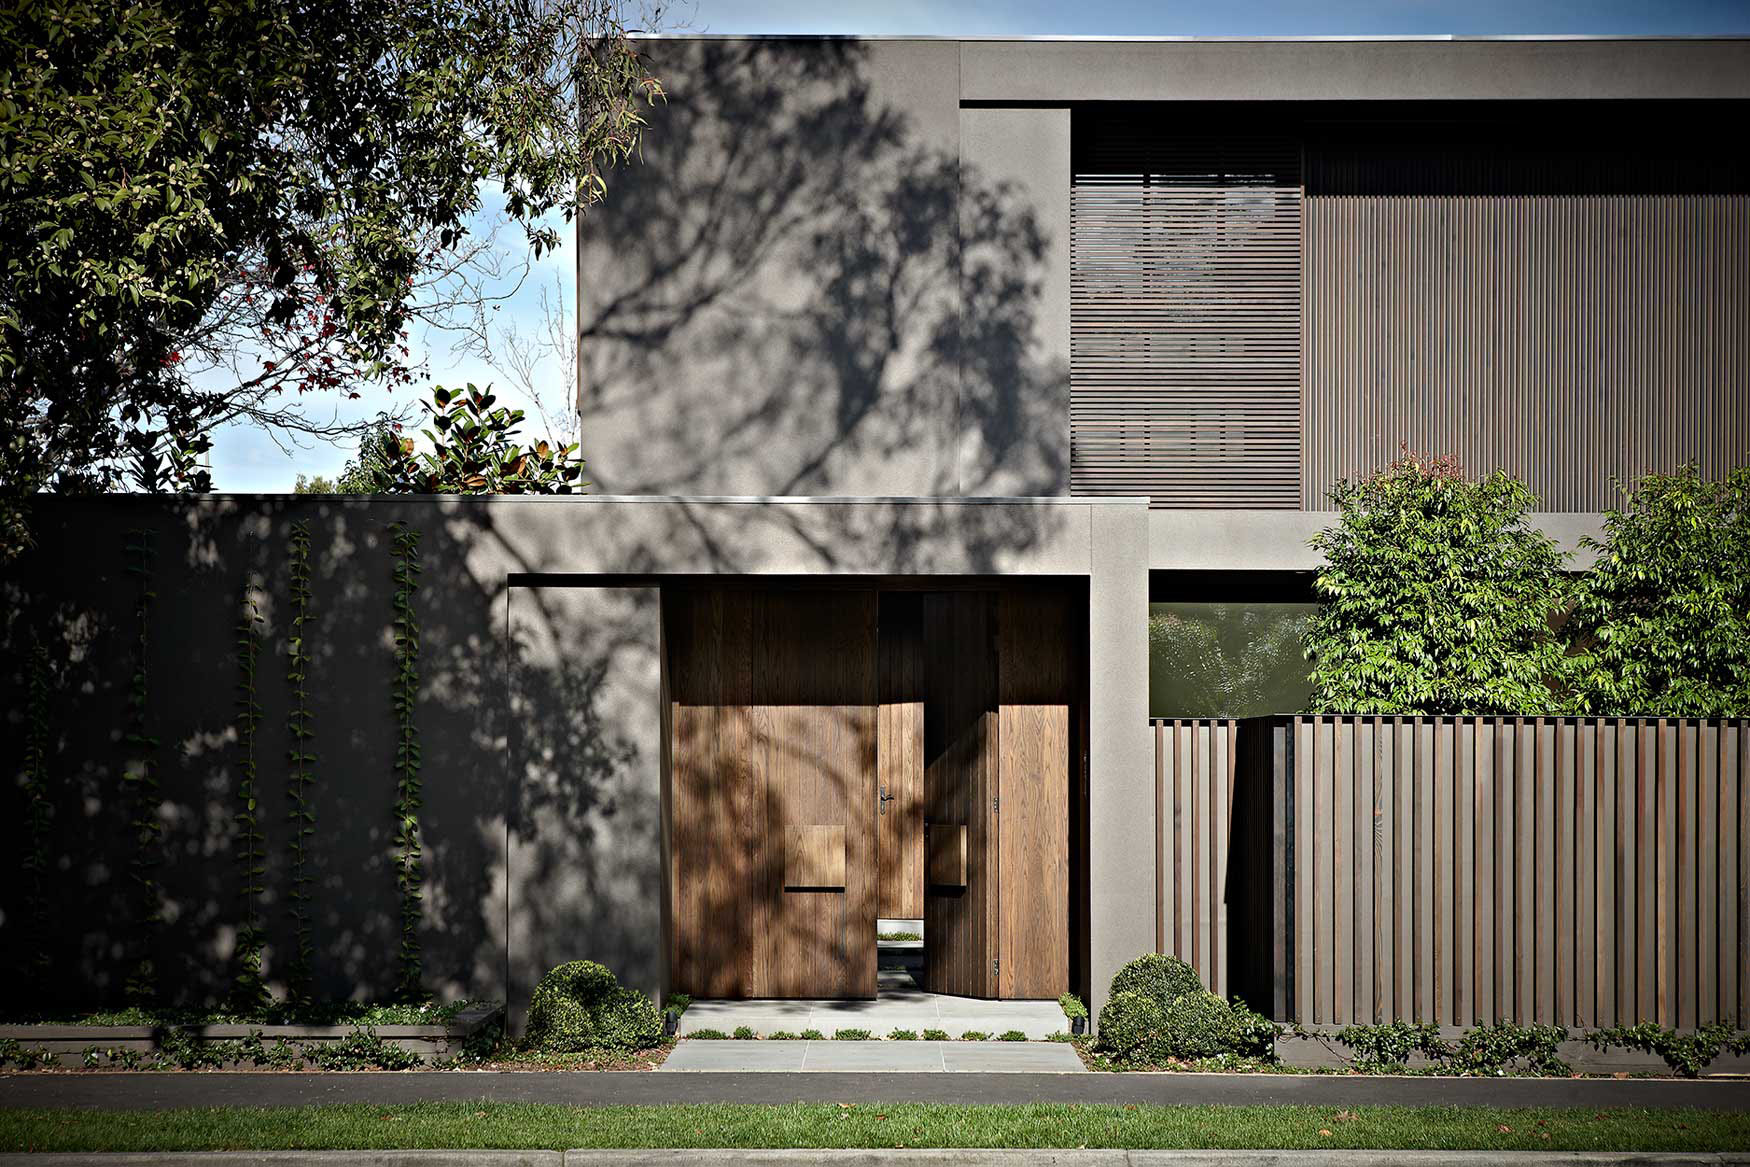 modern-architectural-house-facade-2021-08-27-19-27-36-utc